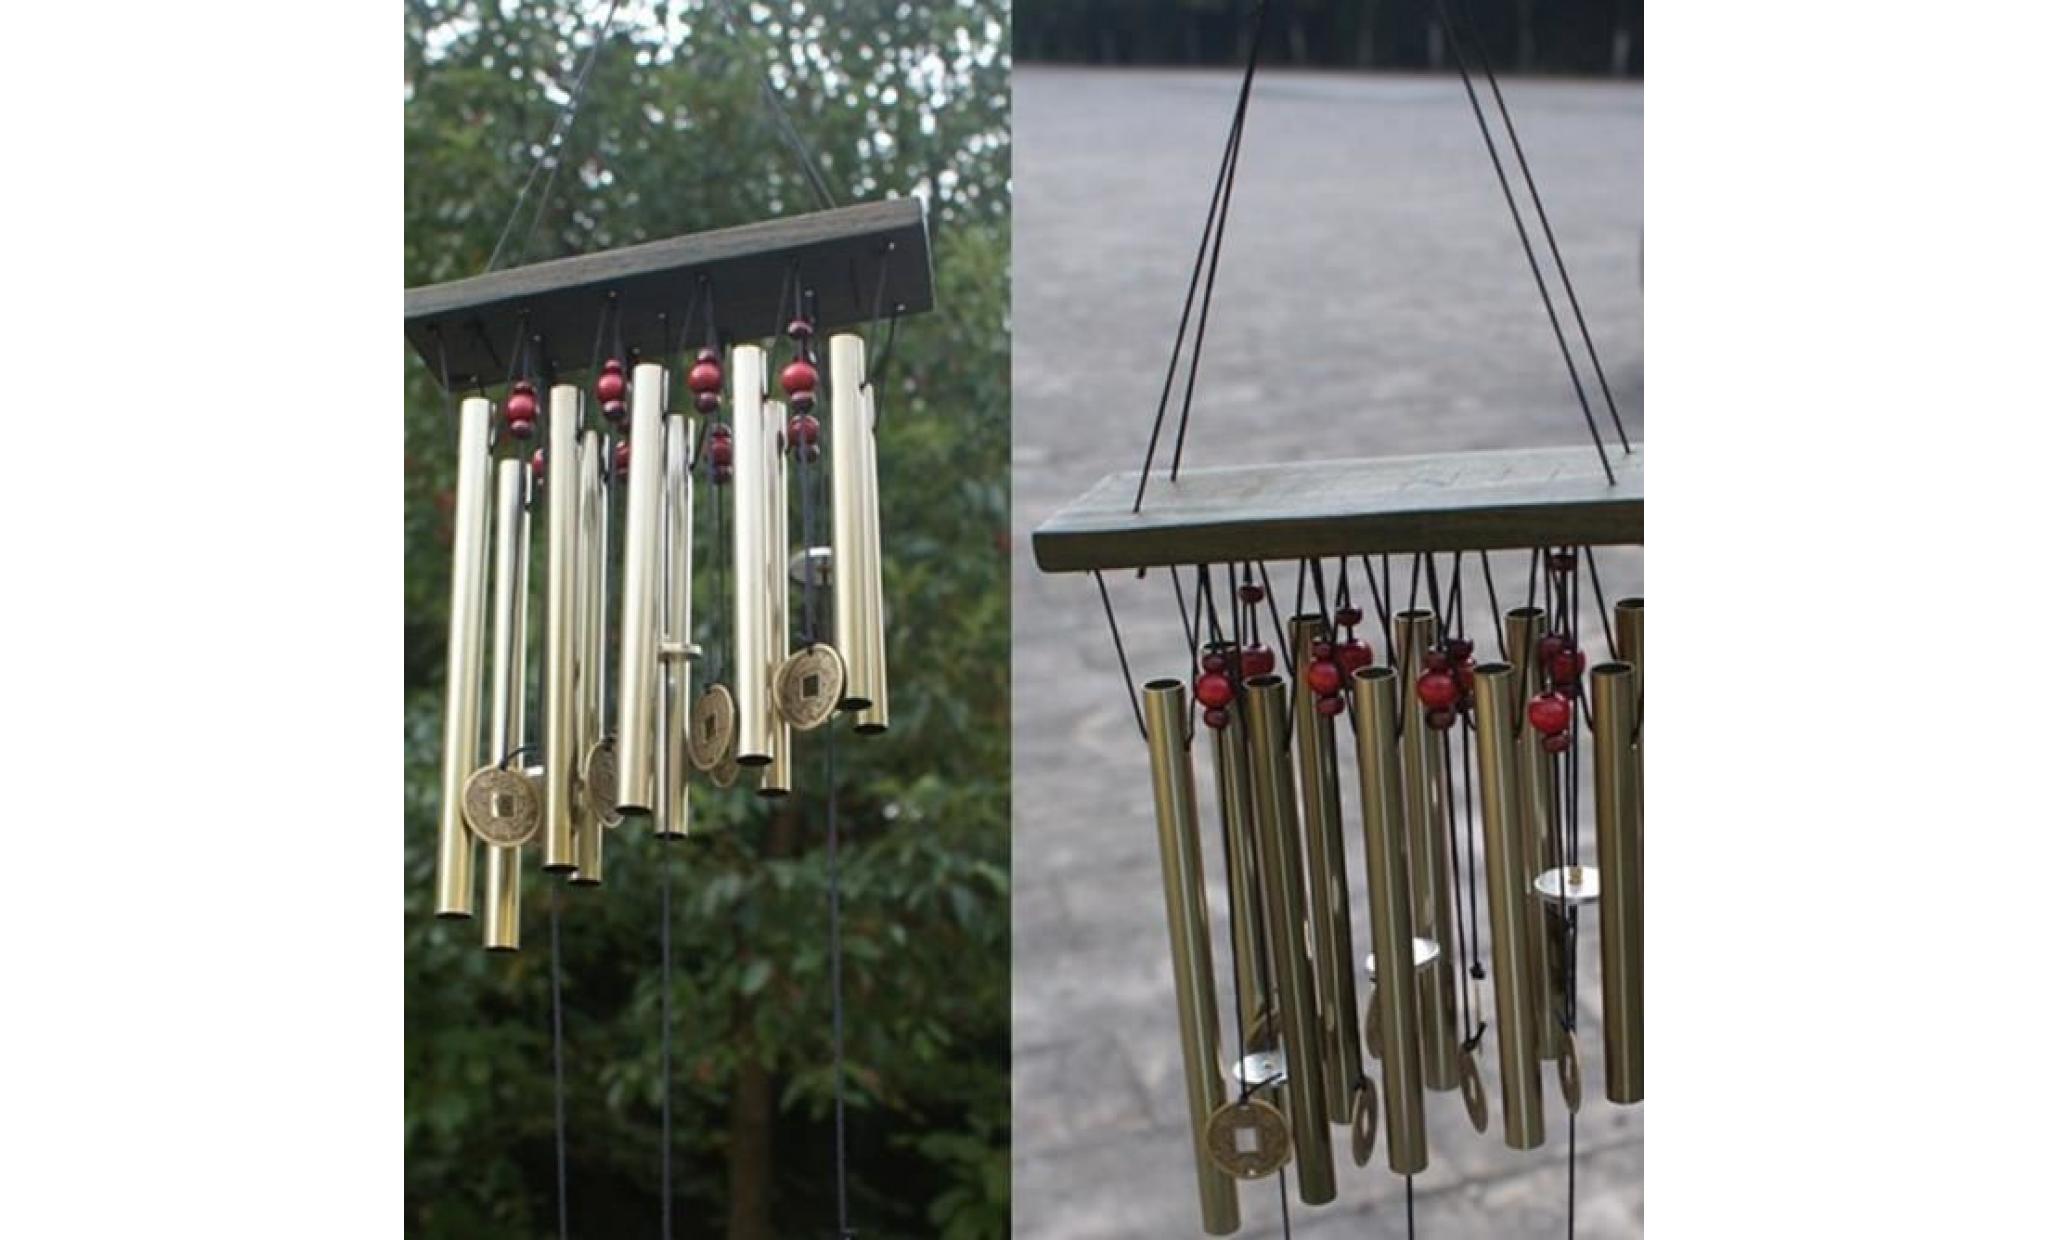 incroyable 10 tubes bois chapelle eglise cloches carillons éoliens yard décor wh @nwbg2302